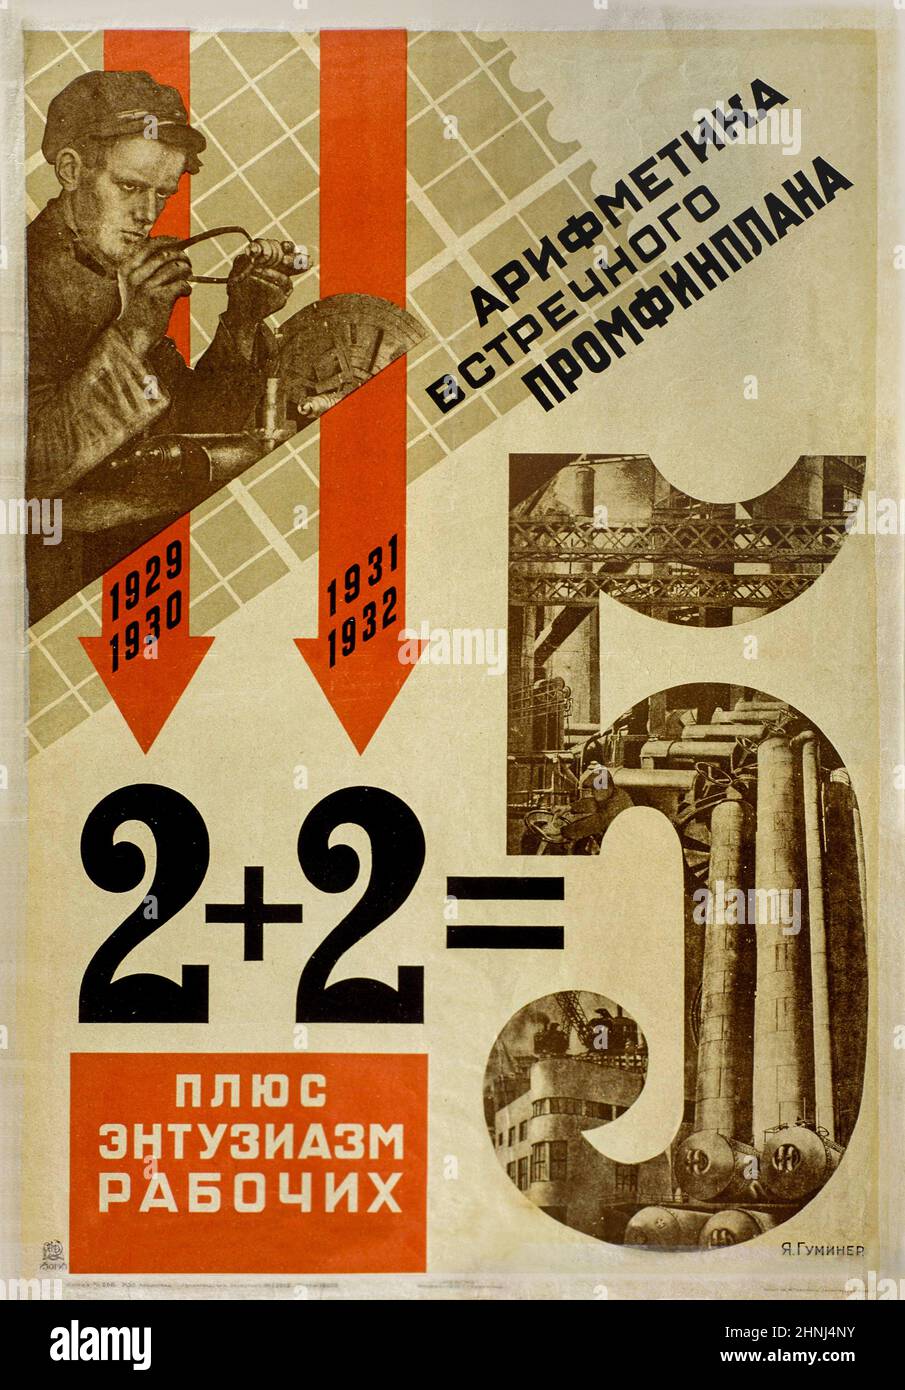 2+2=5 aritmetica del piano industriale e finanziario con l'entusiasmo dei lavoratori, 1931 poster sovietico progettato da Yakov Guminer (1896-1942) dopo che Stalin ha rivelato che il primo piano quinquennale sarebbe stato completato quasi un anno prima del calendario previsto nel 1932. Foto Stock